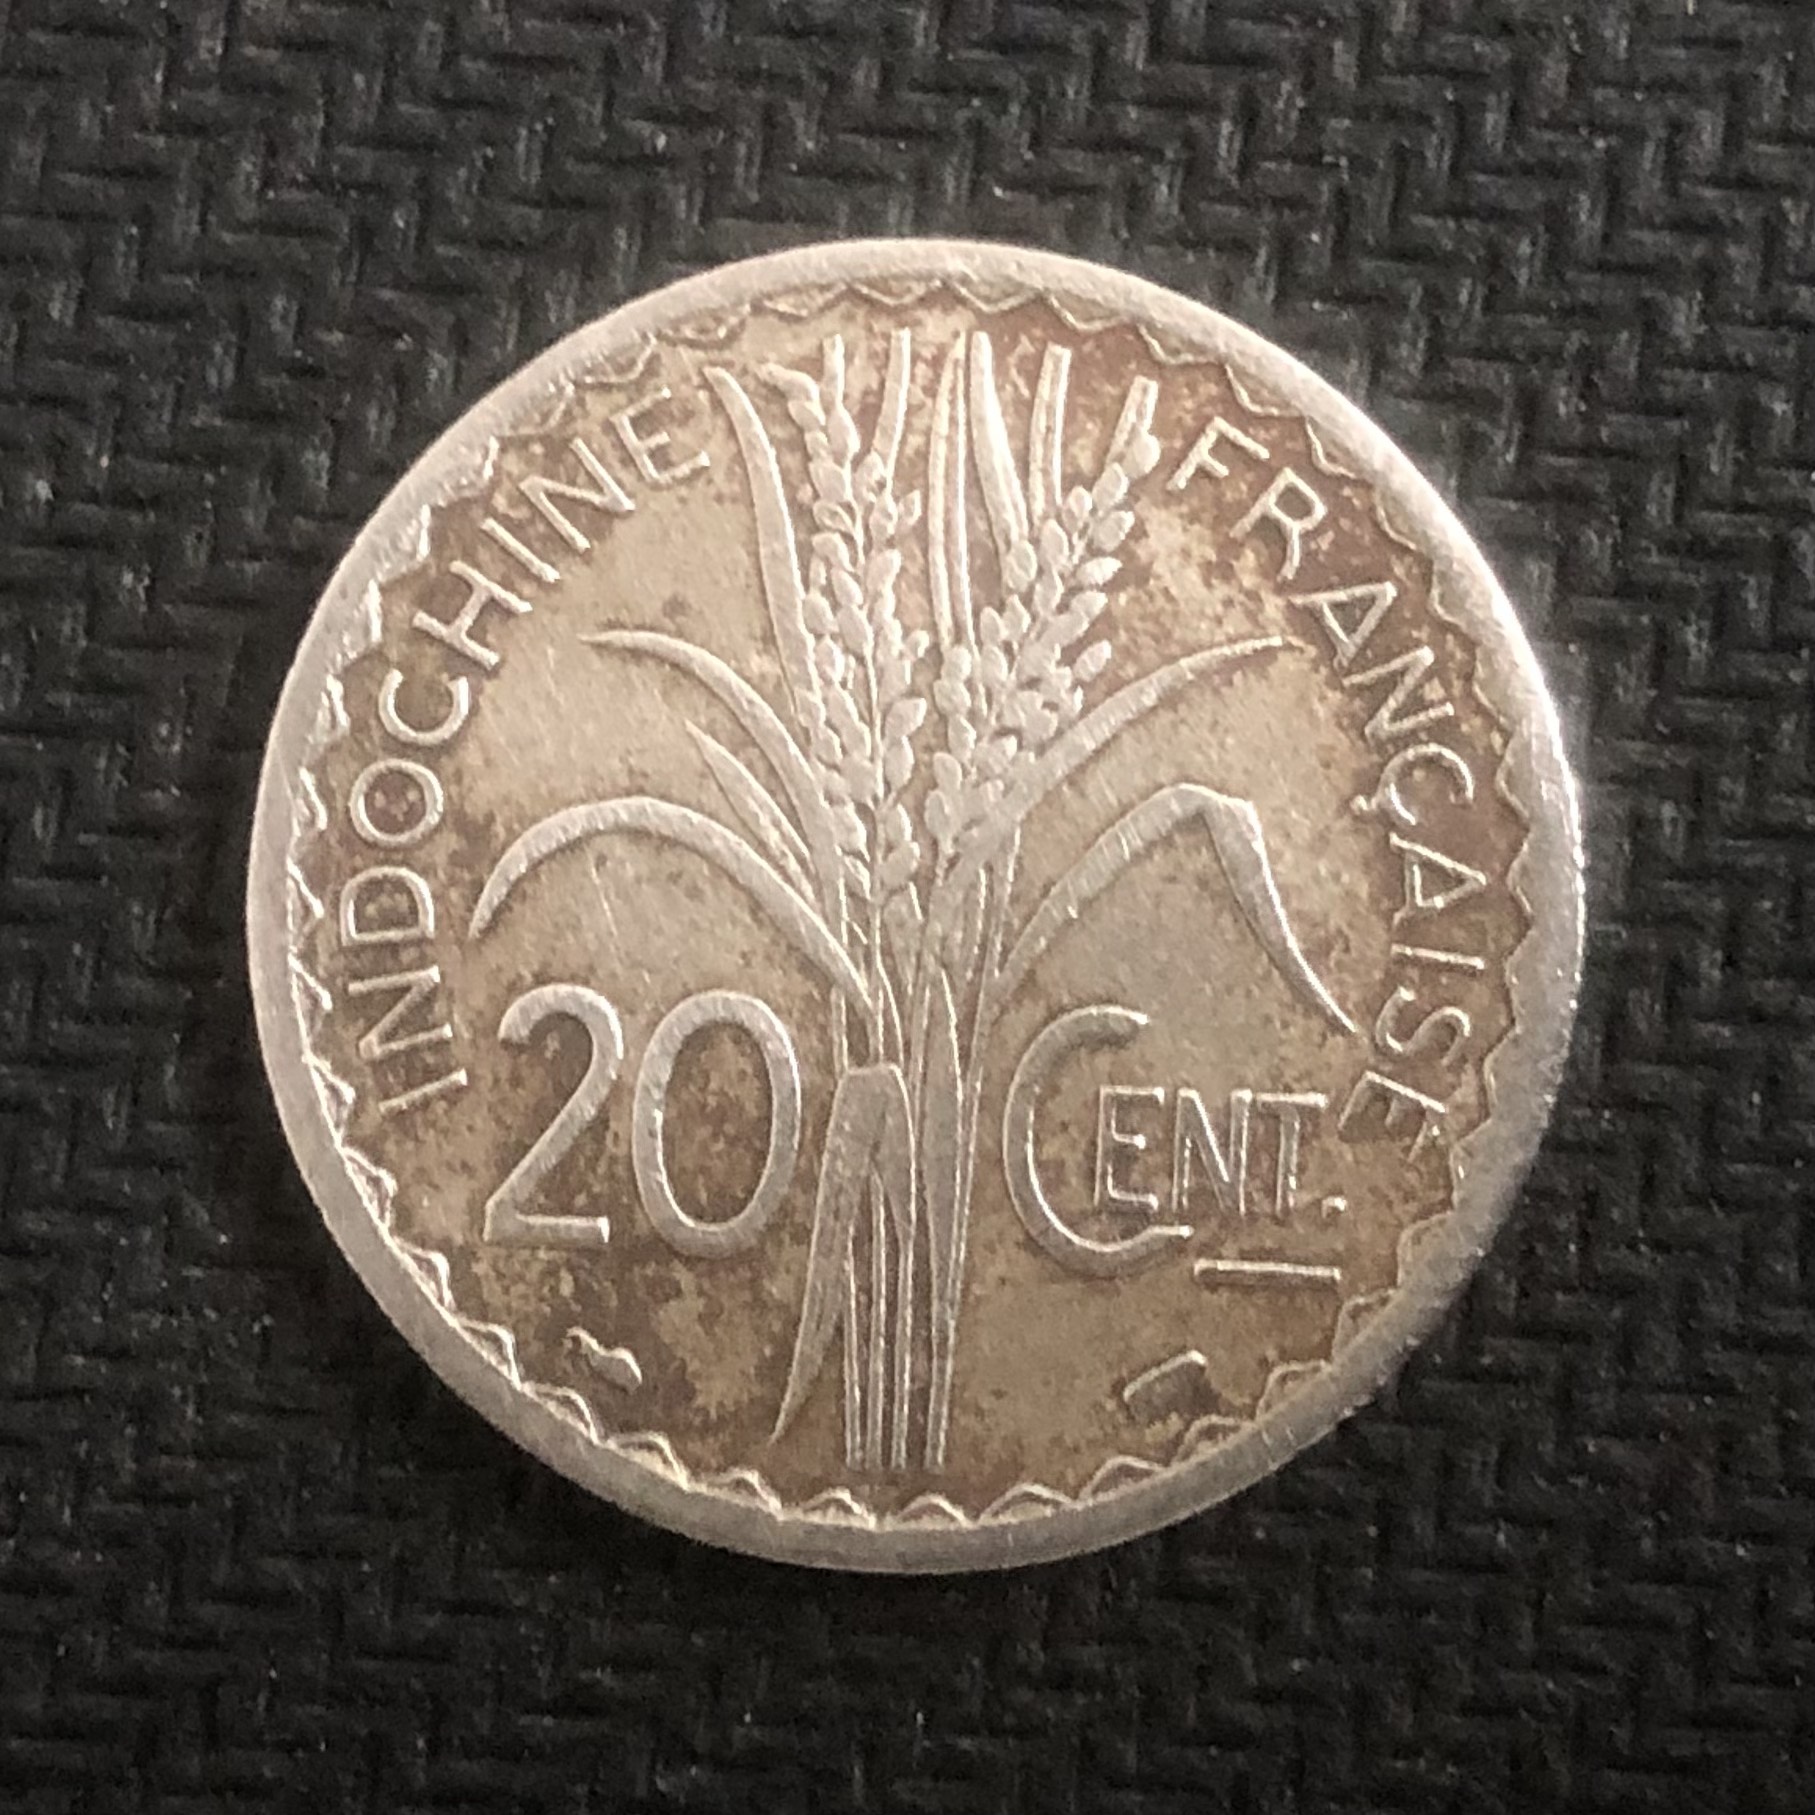 Đồng xu Đầu trọc Đông Dương mệnh giá 20 cent năm 1941